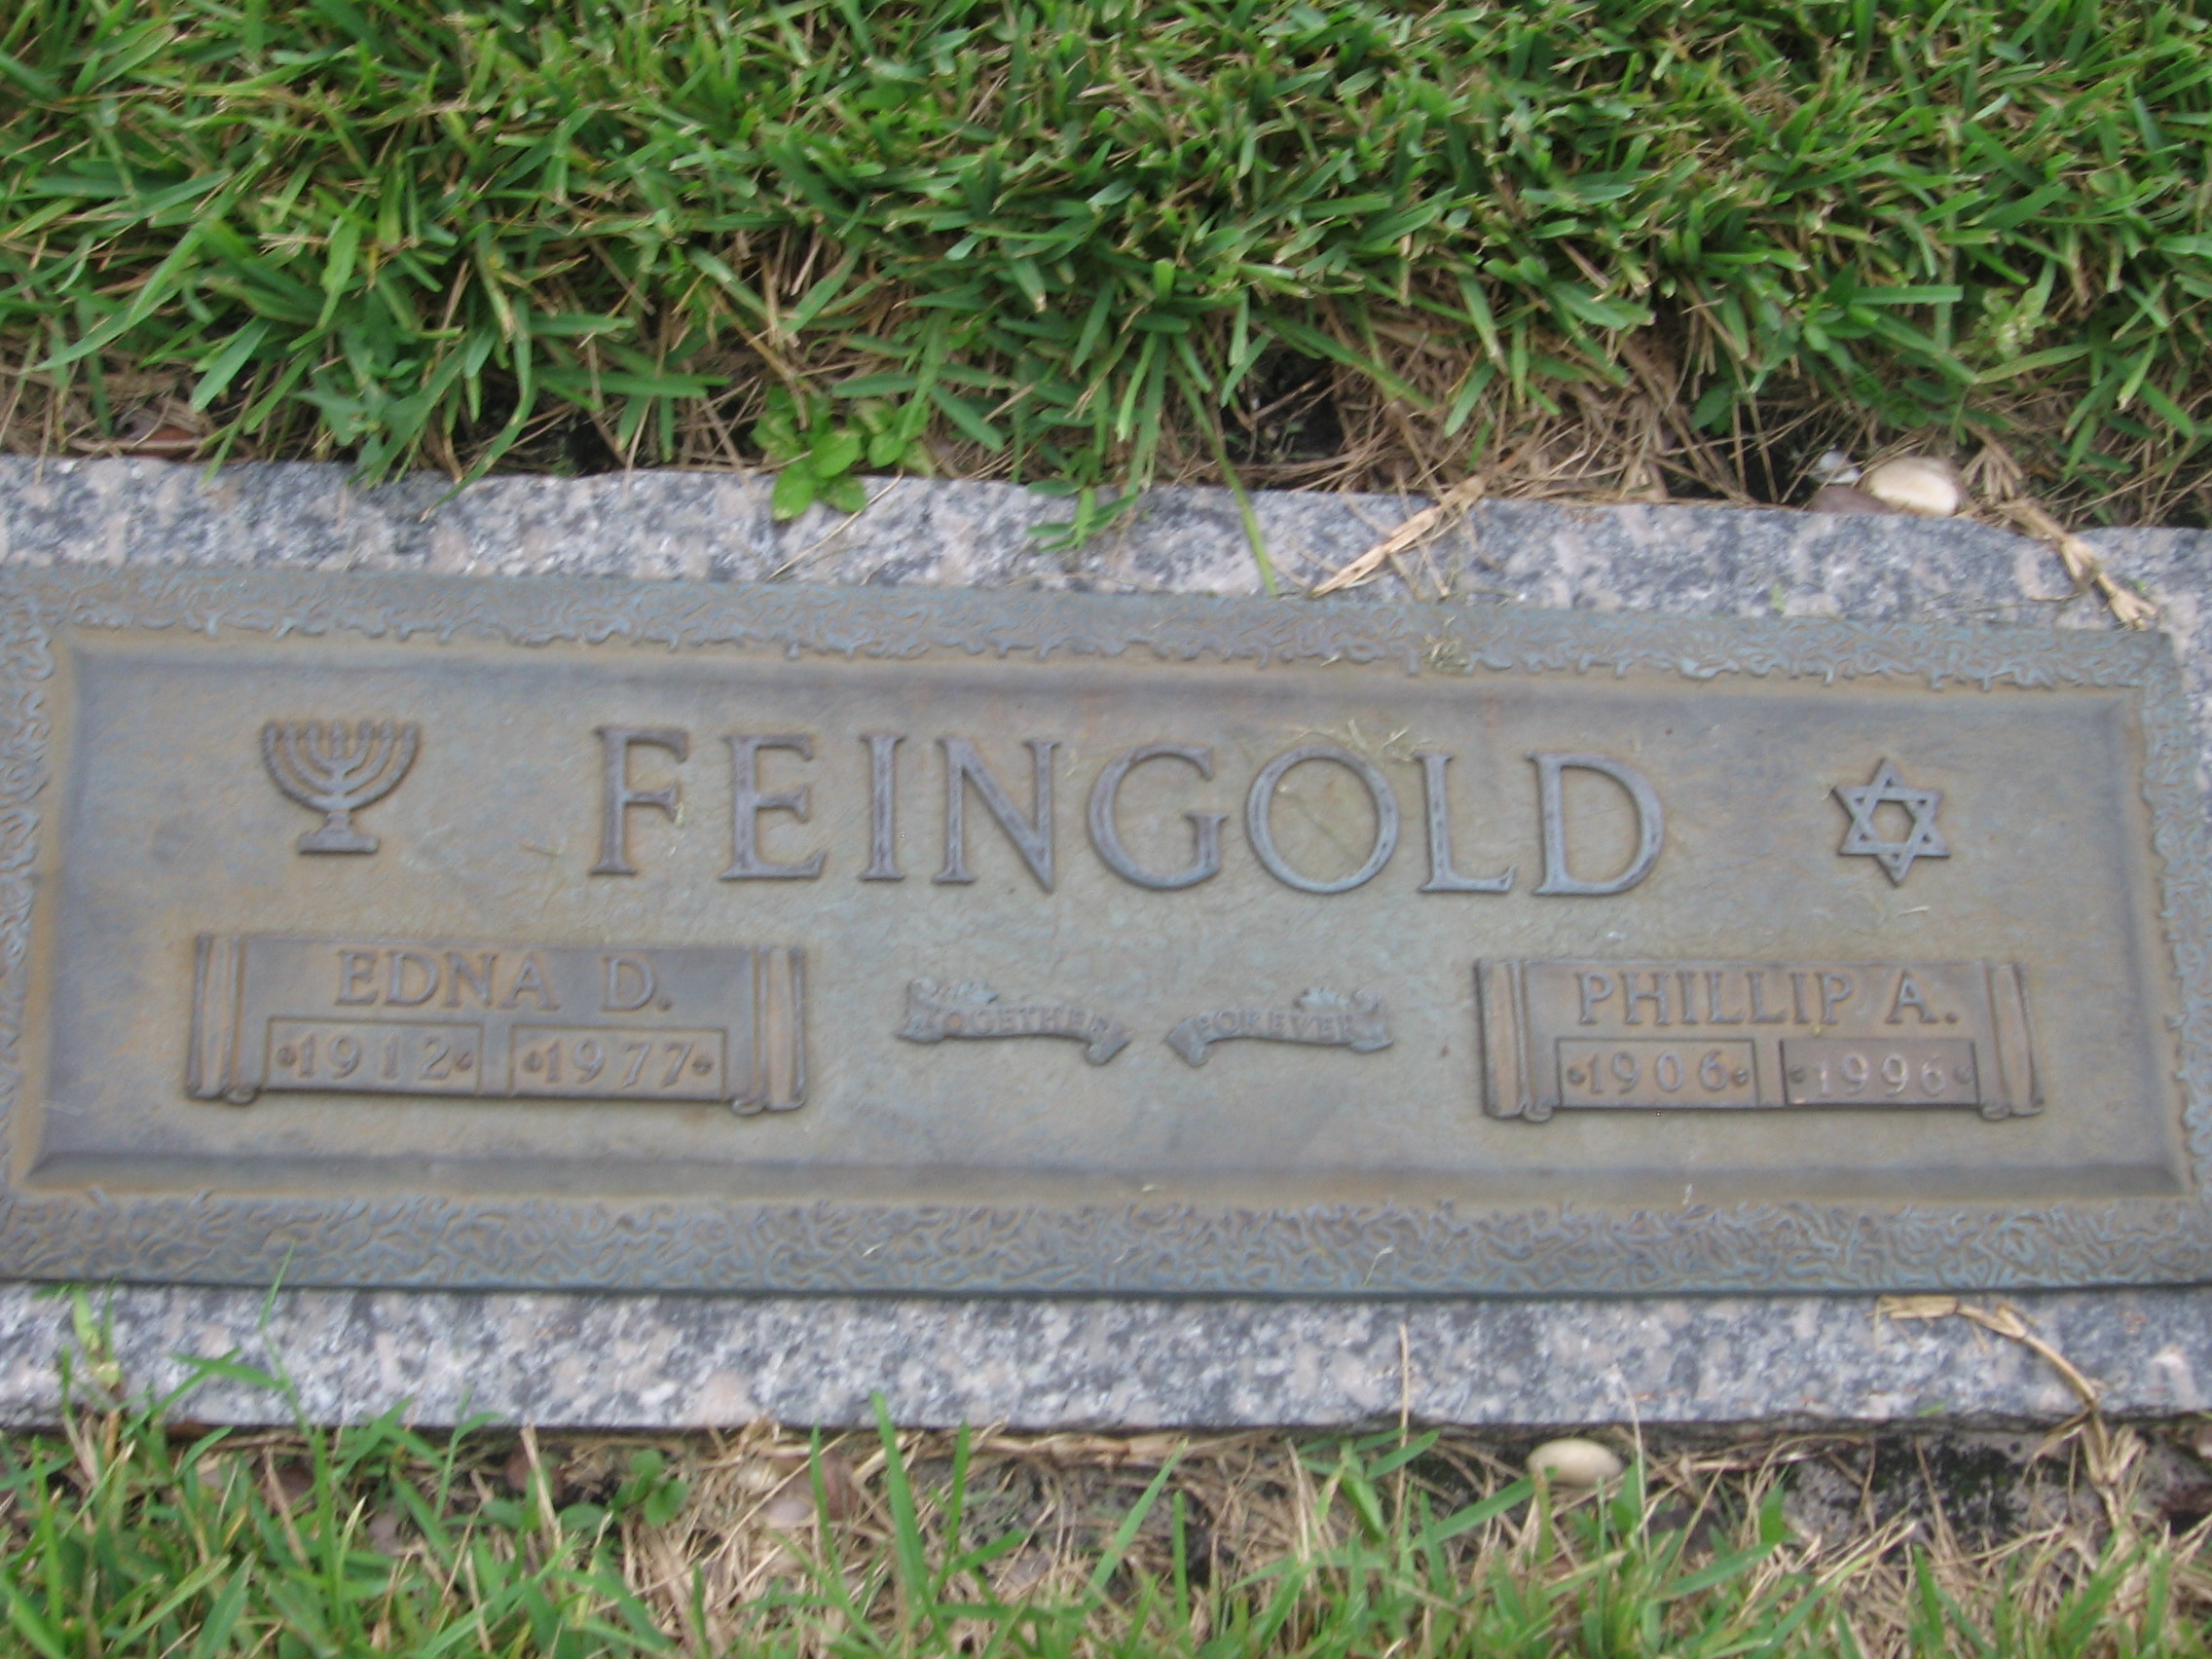 Edna D Feingold